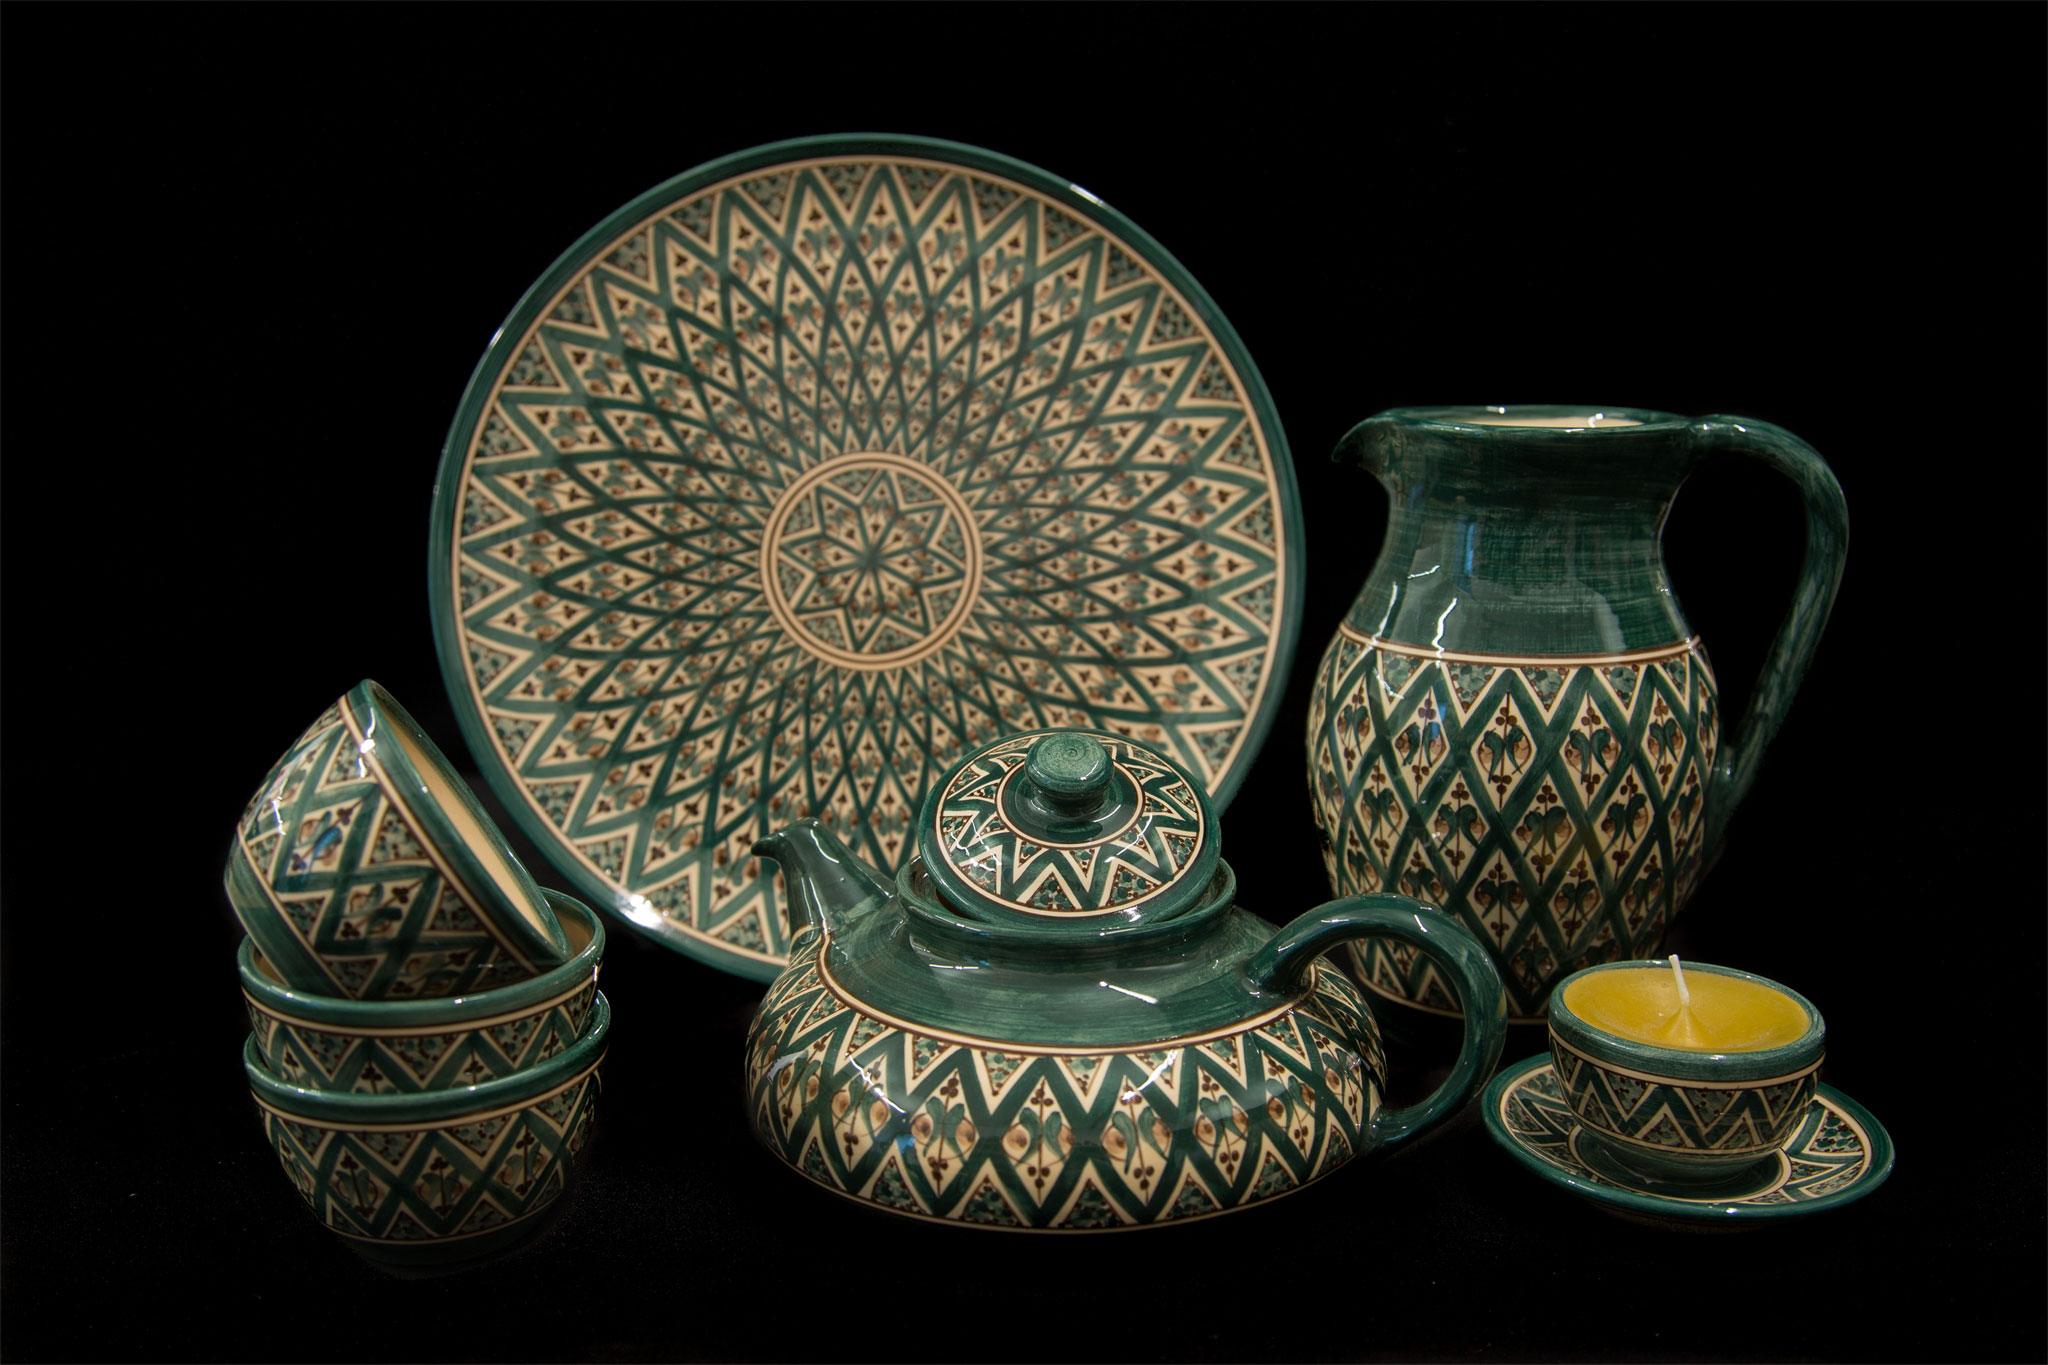 Keramikgeschirr mit alten orientalischen Mustern